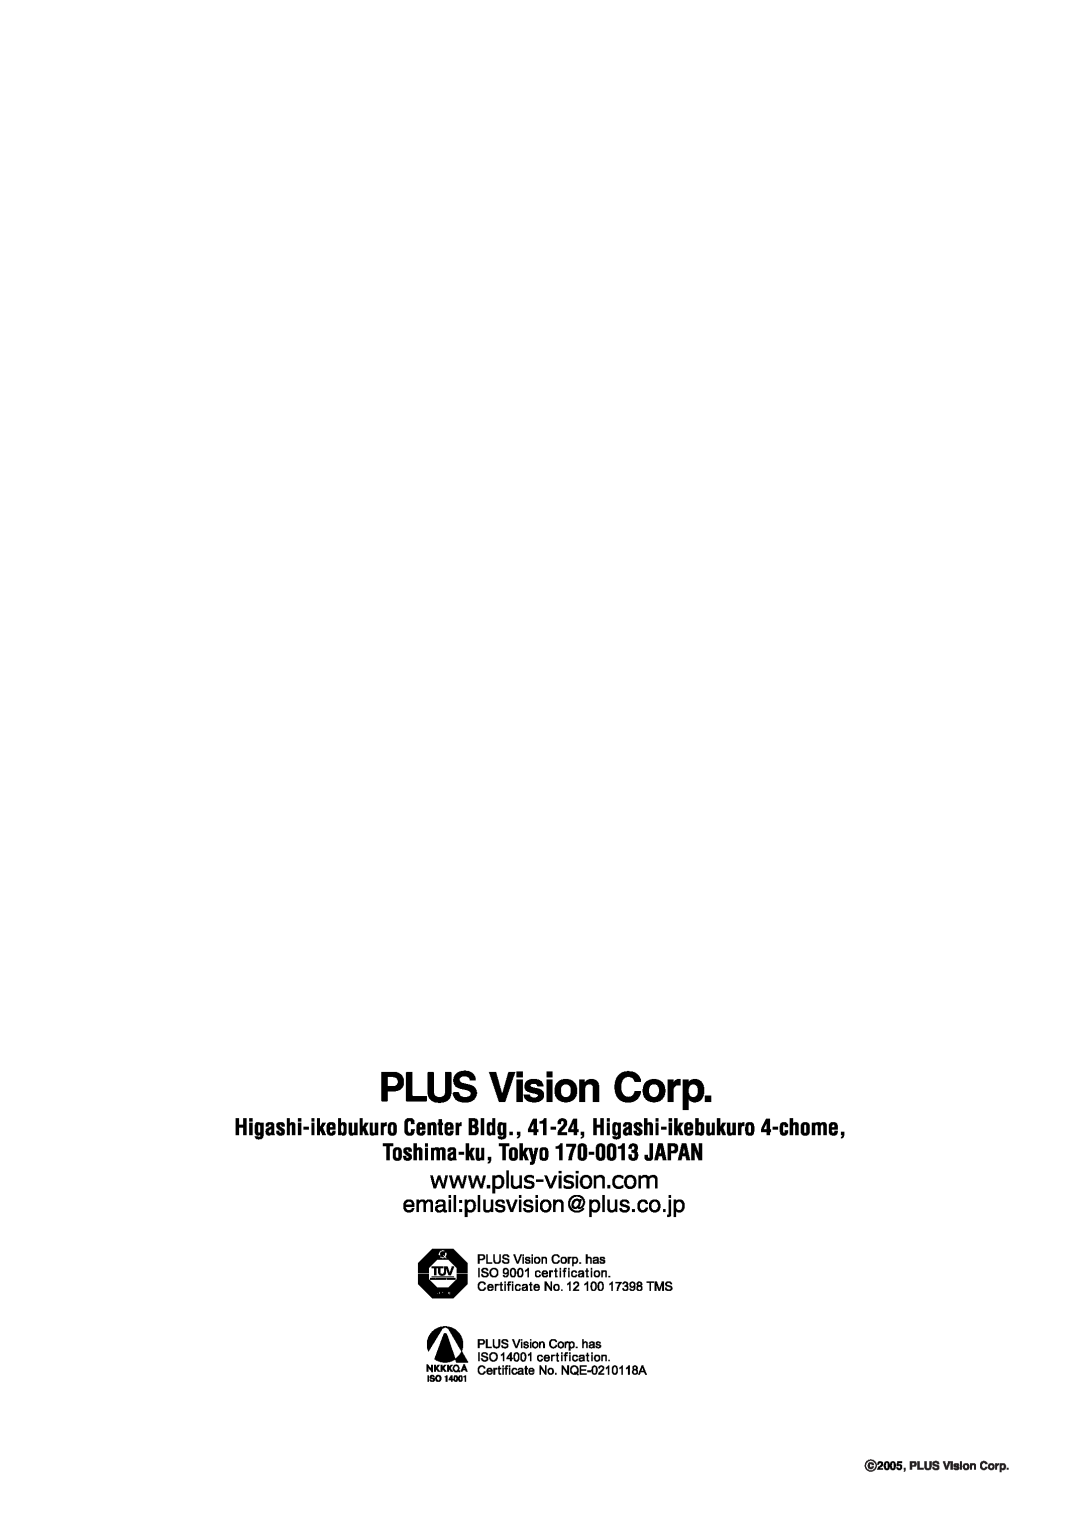 PLUS Vision U4-232 user manual 2005 